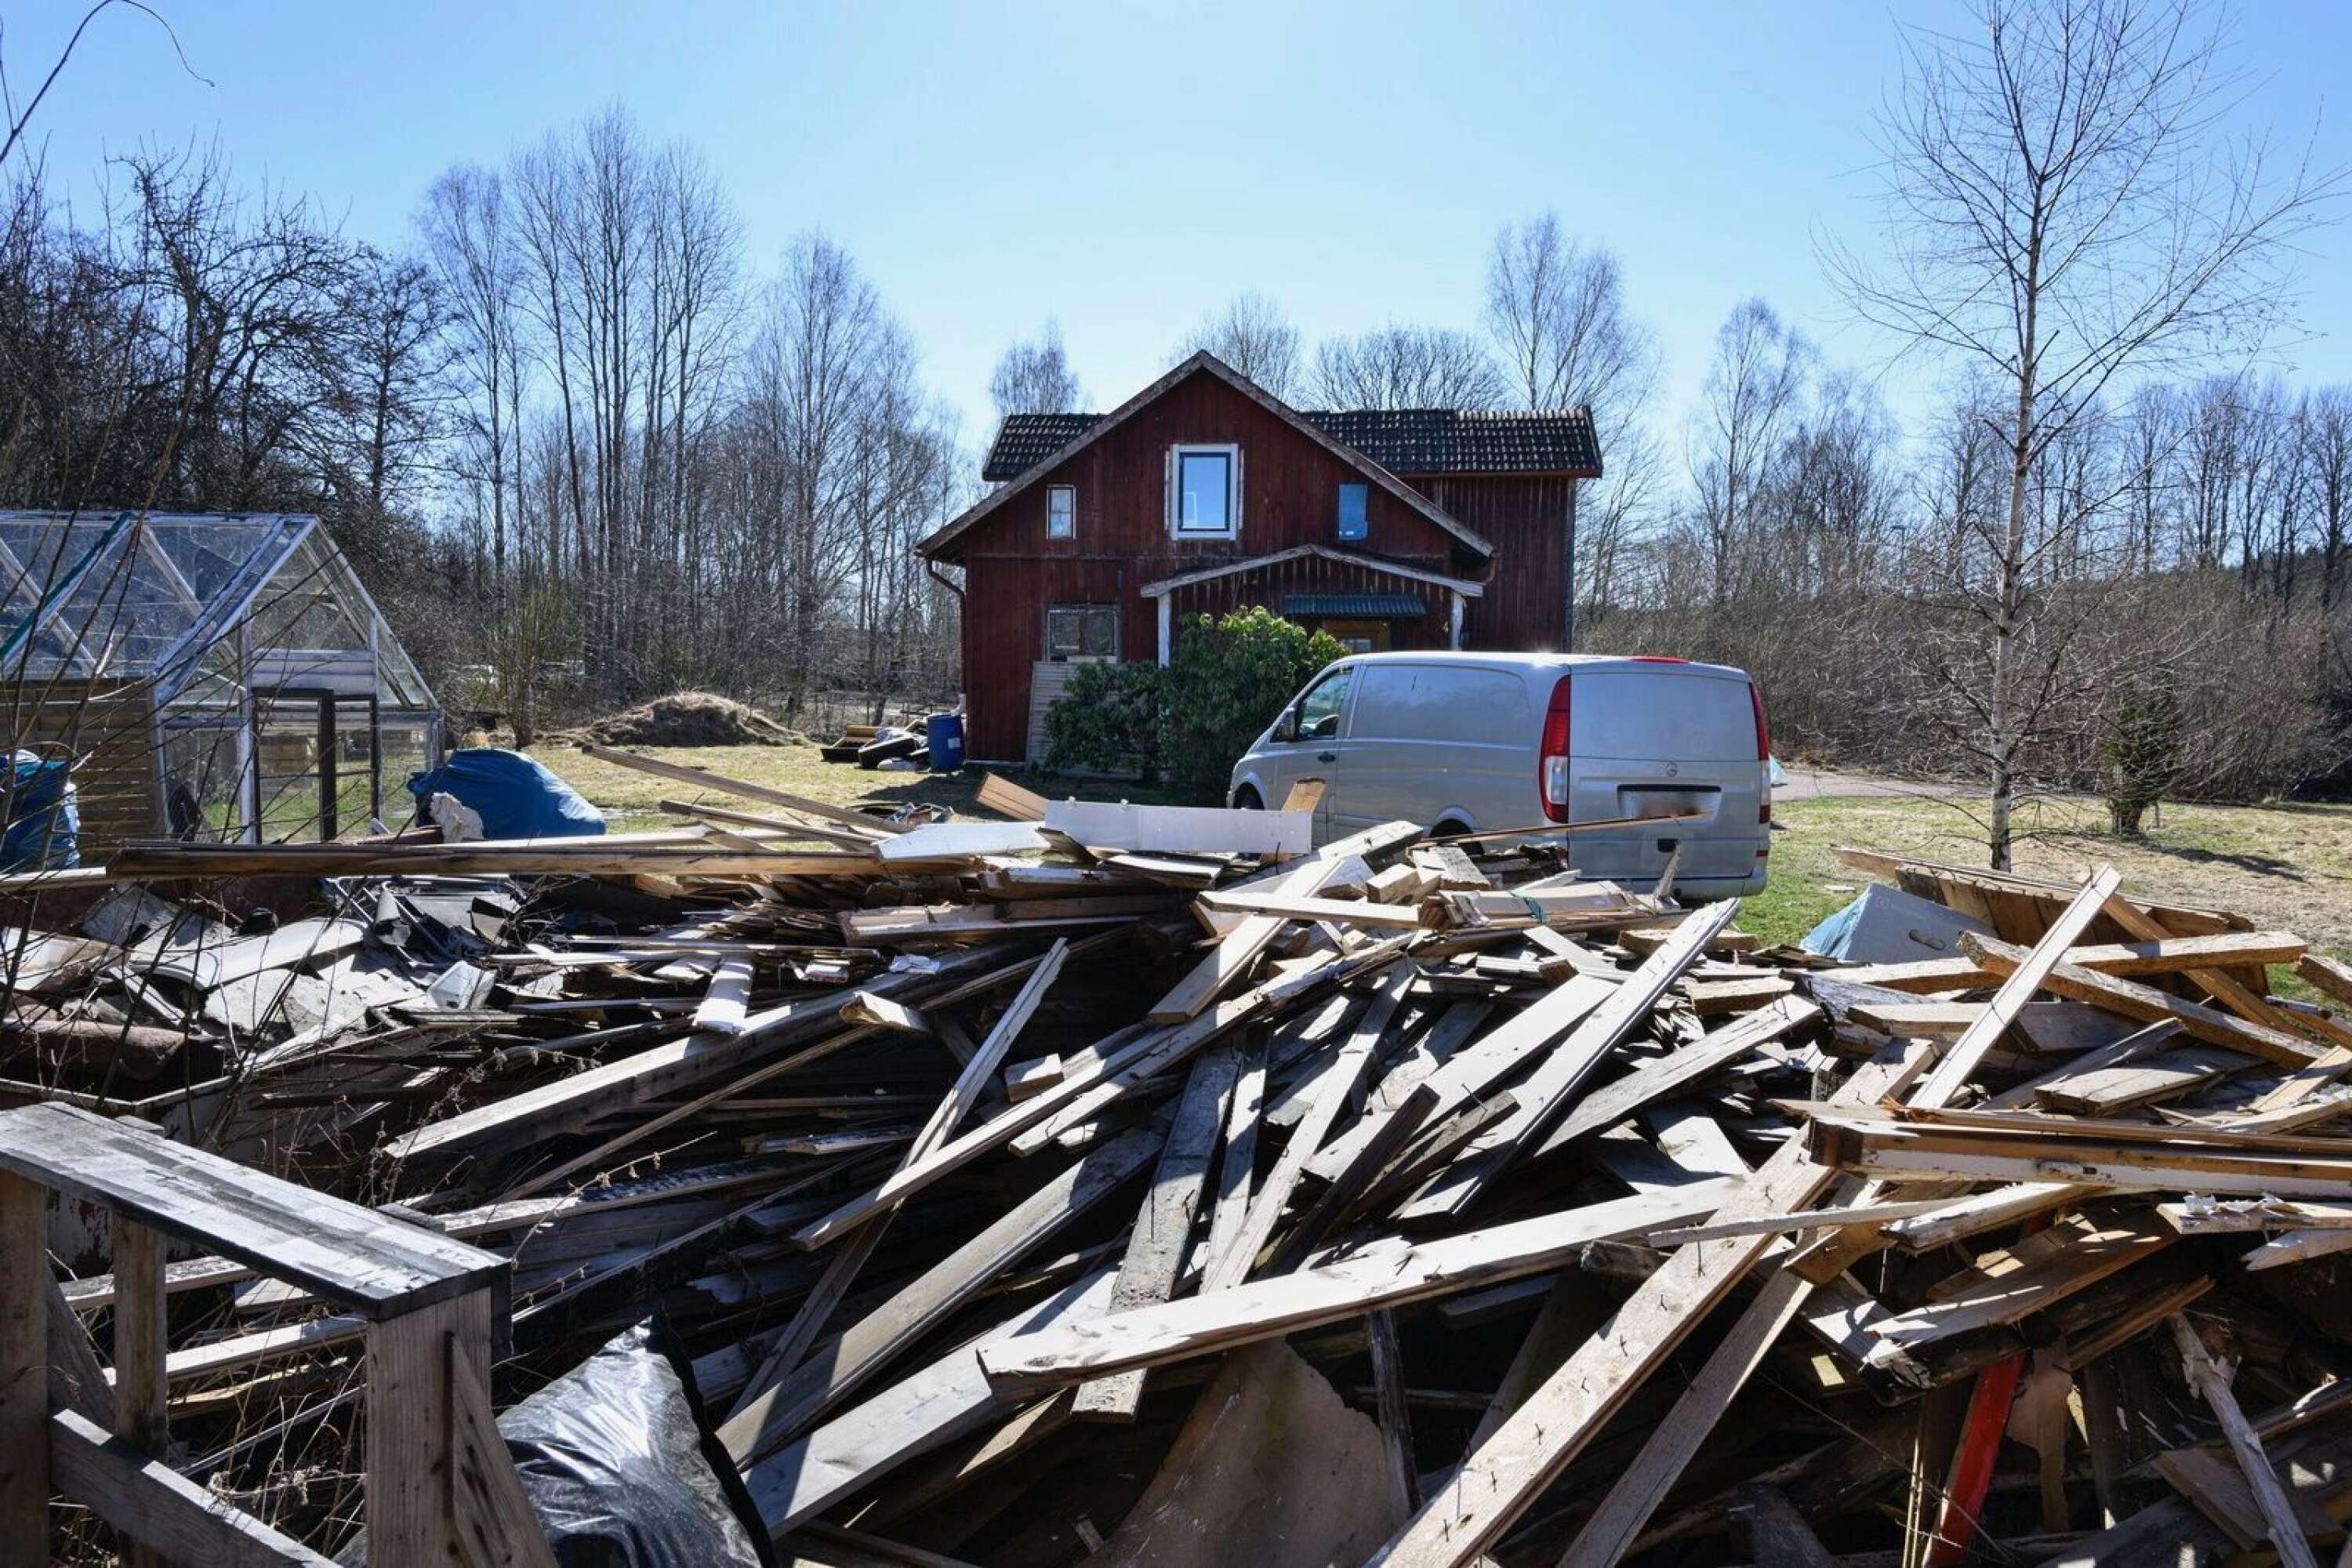 Stora mängder plankor och annan bråte ligger runt den här villan i östra Vålberg. ”Det ser bedrövligt ut och är en skamfläck för hela området”, säger en granne.